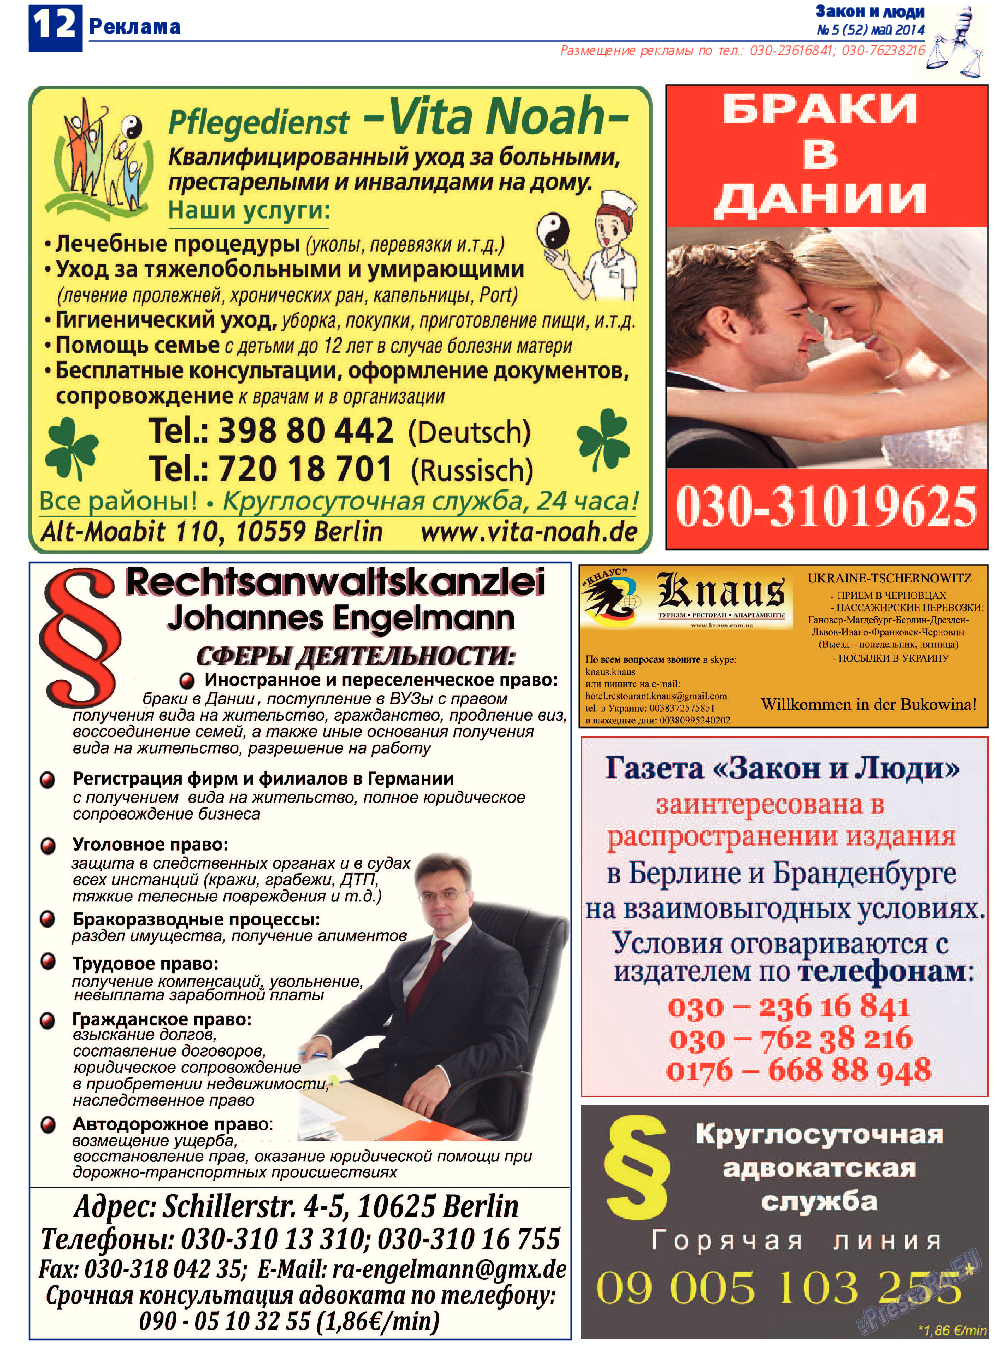 Закон и люди, газета. 2014 №5 стр.12